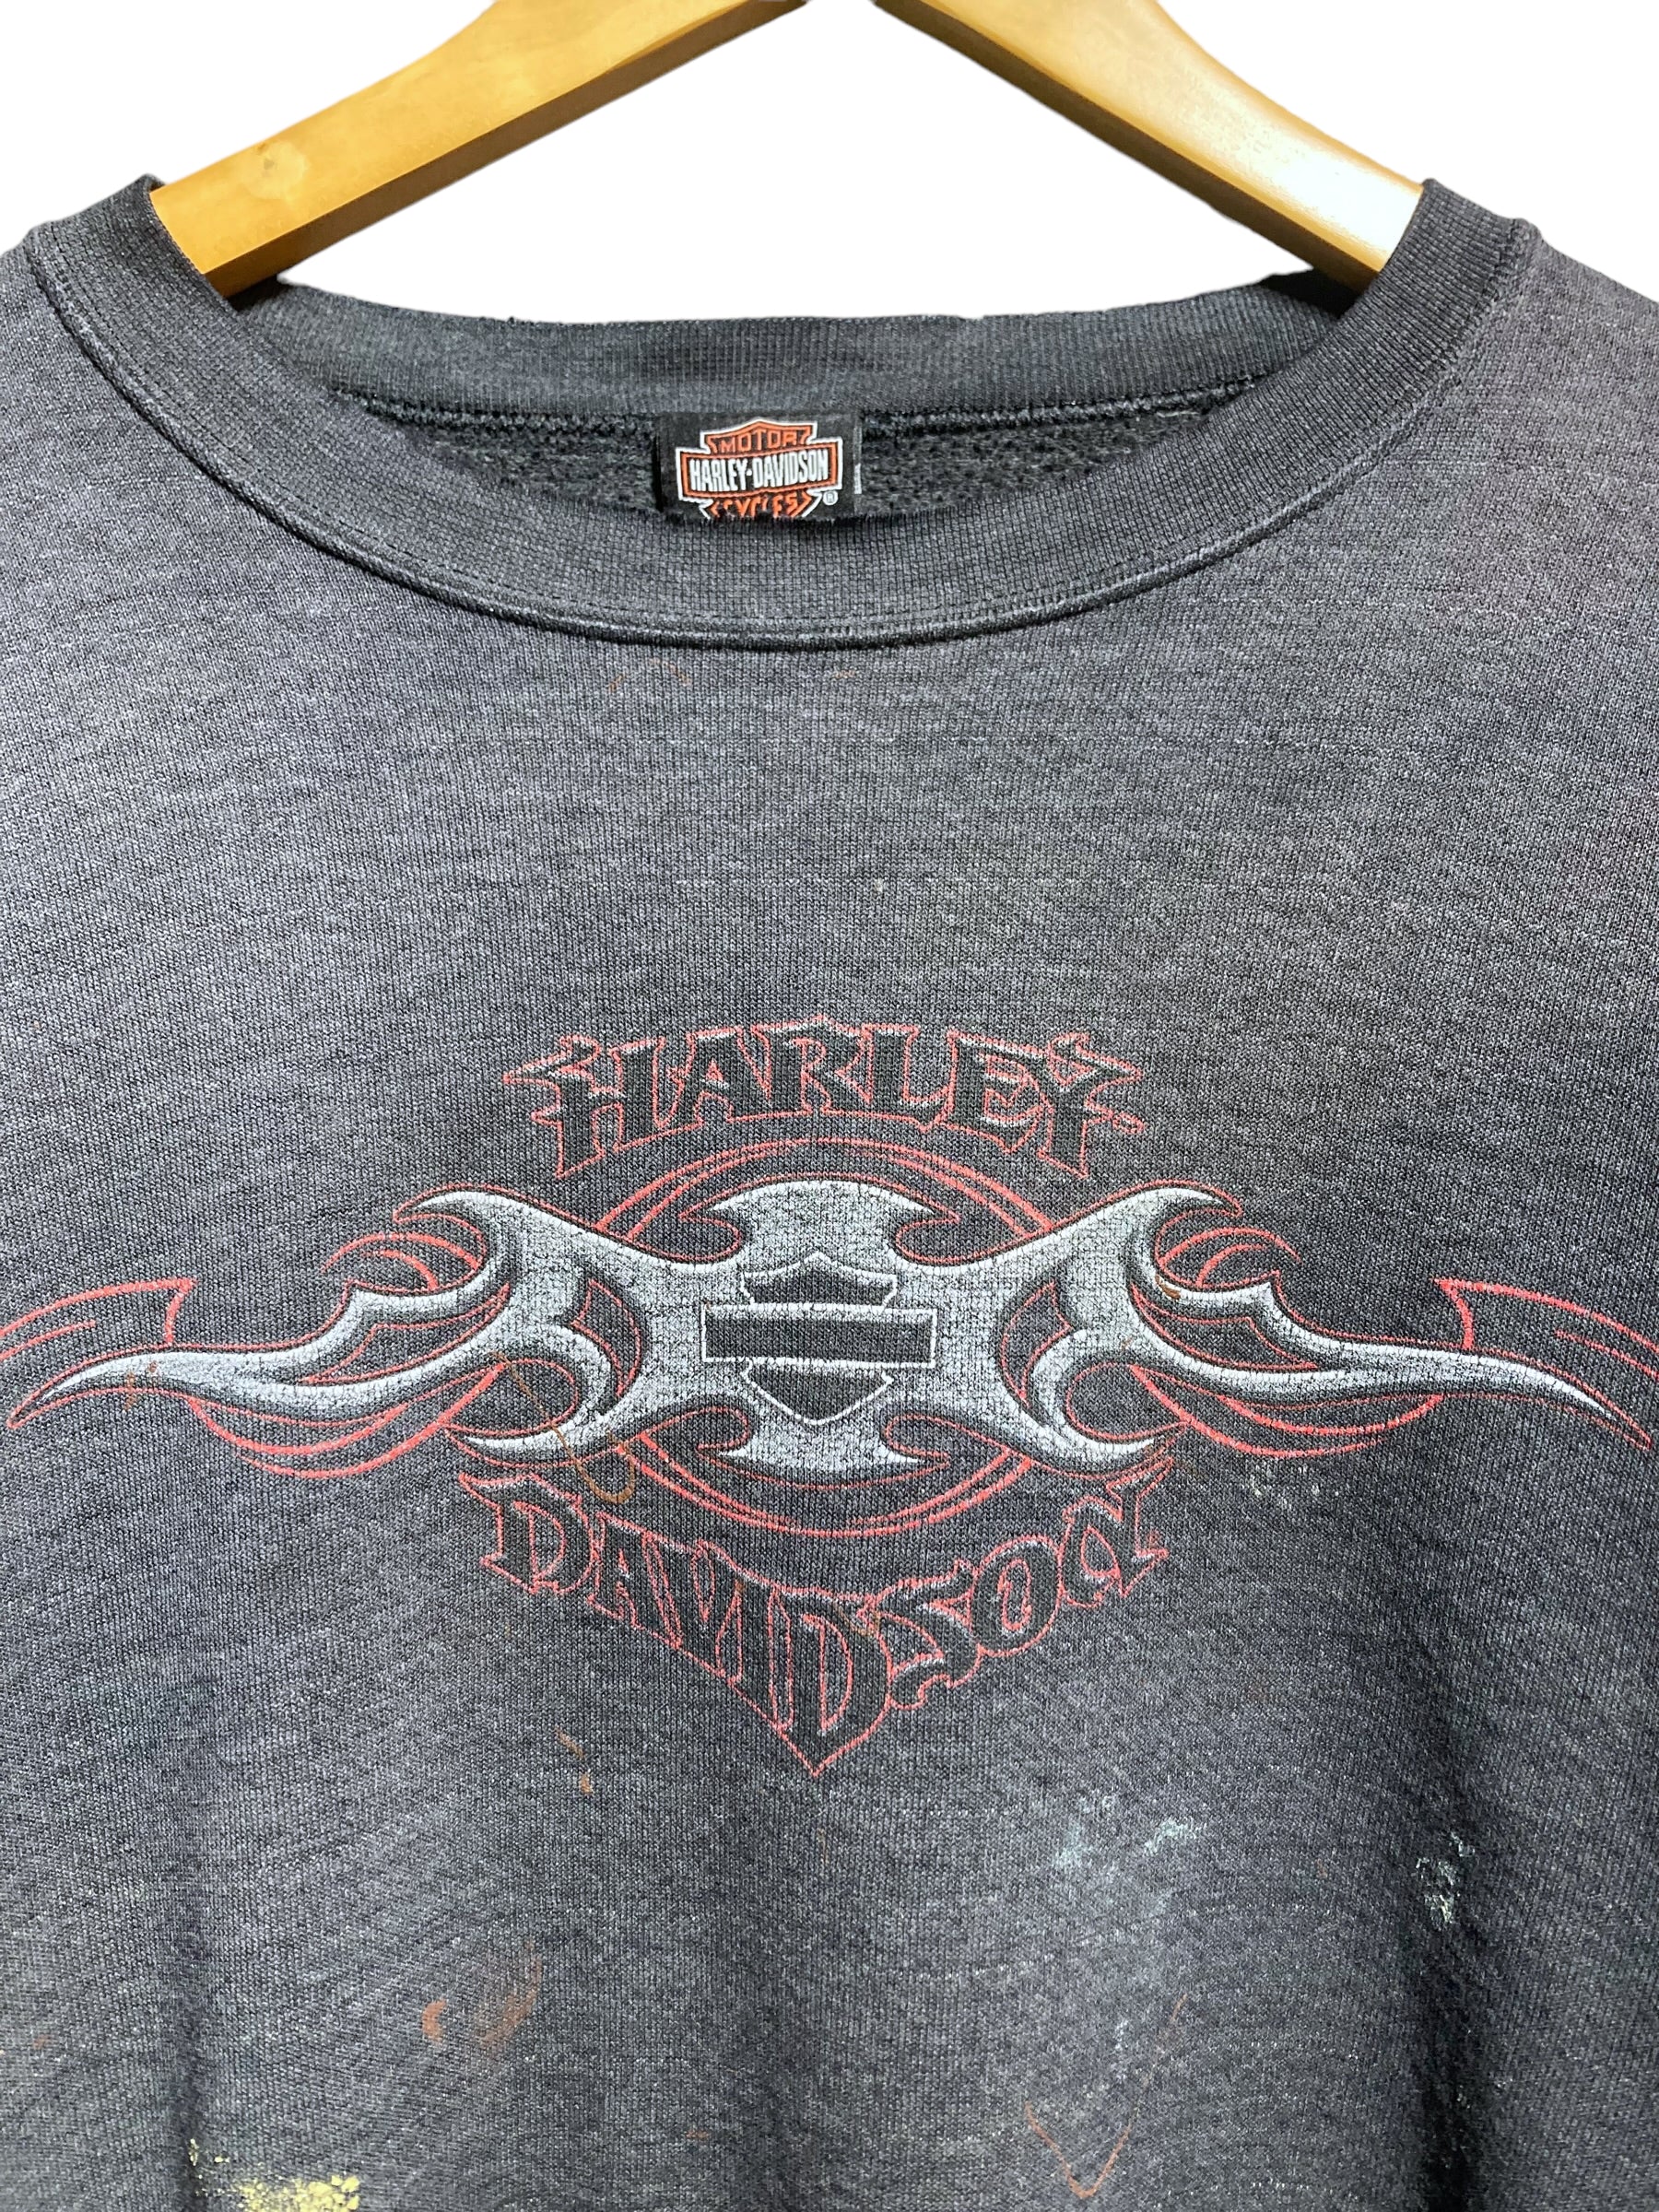 Harley Davidson ハーレーダビッドソン スウェット トレーナー ...